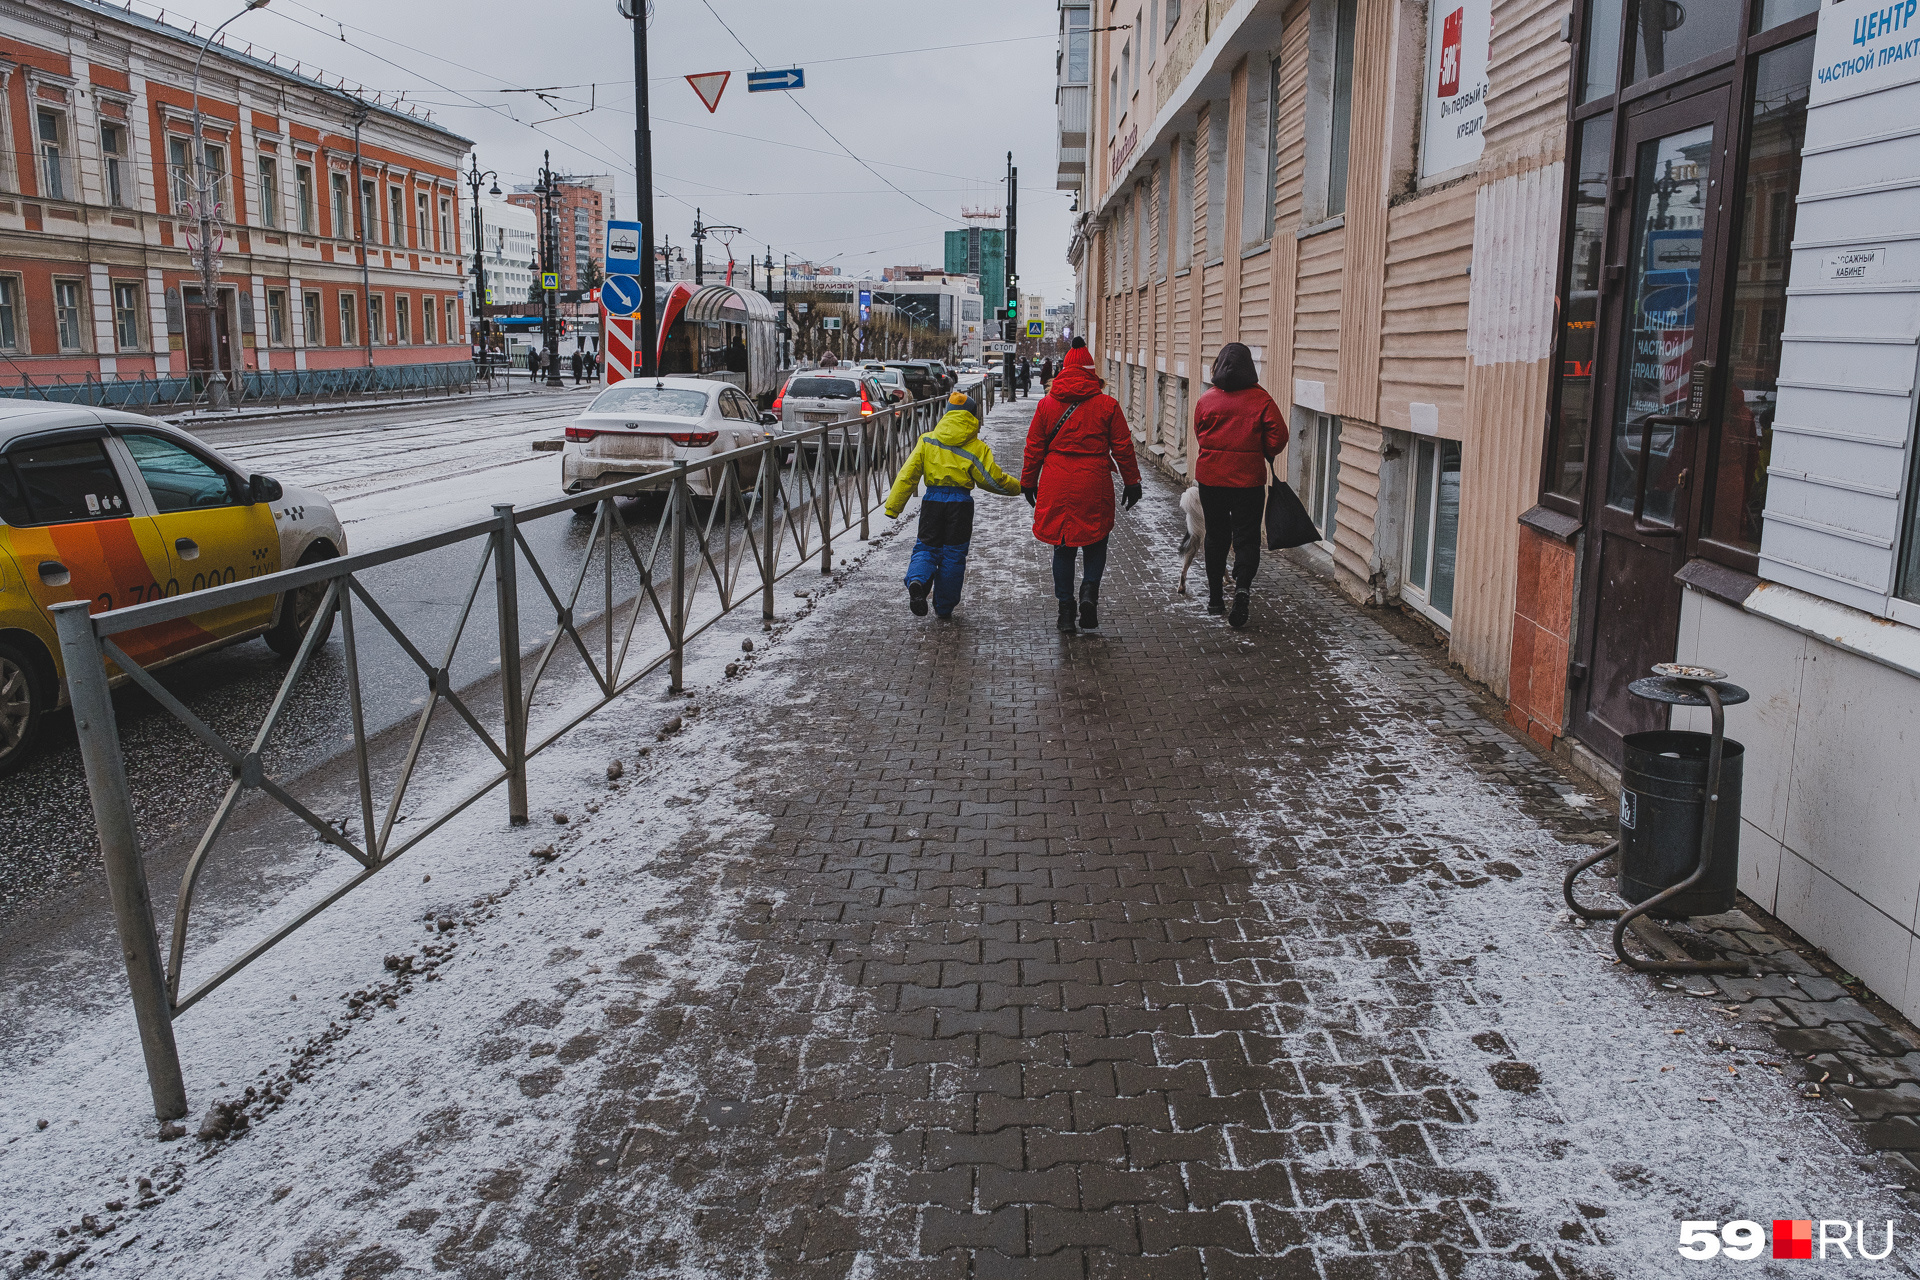 Снова сворачиваем с Комсомольского проспекта на улицу Ленина. Здесь тротуары не такие чистые